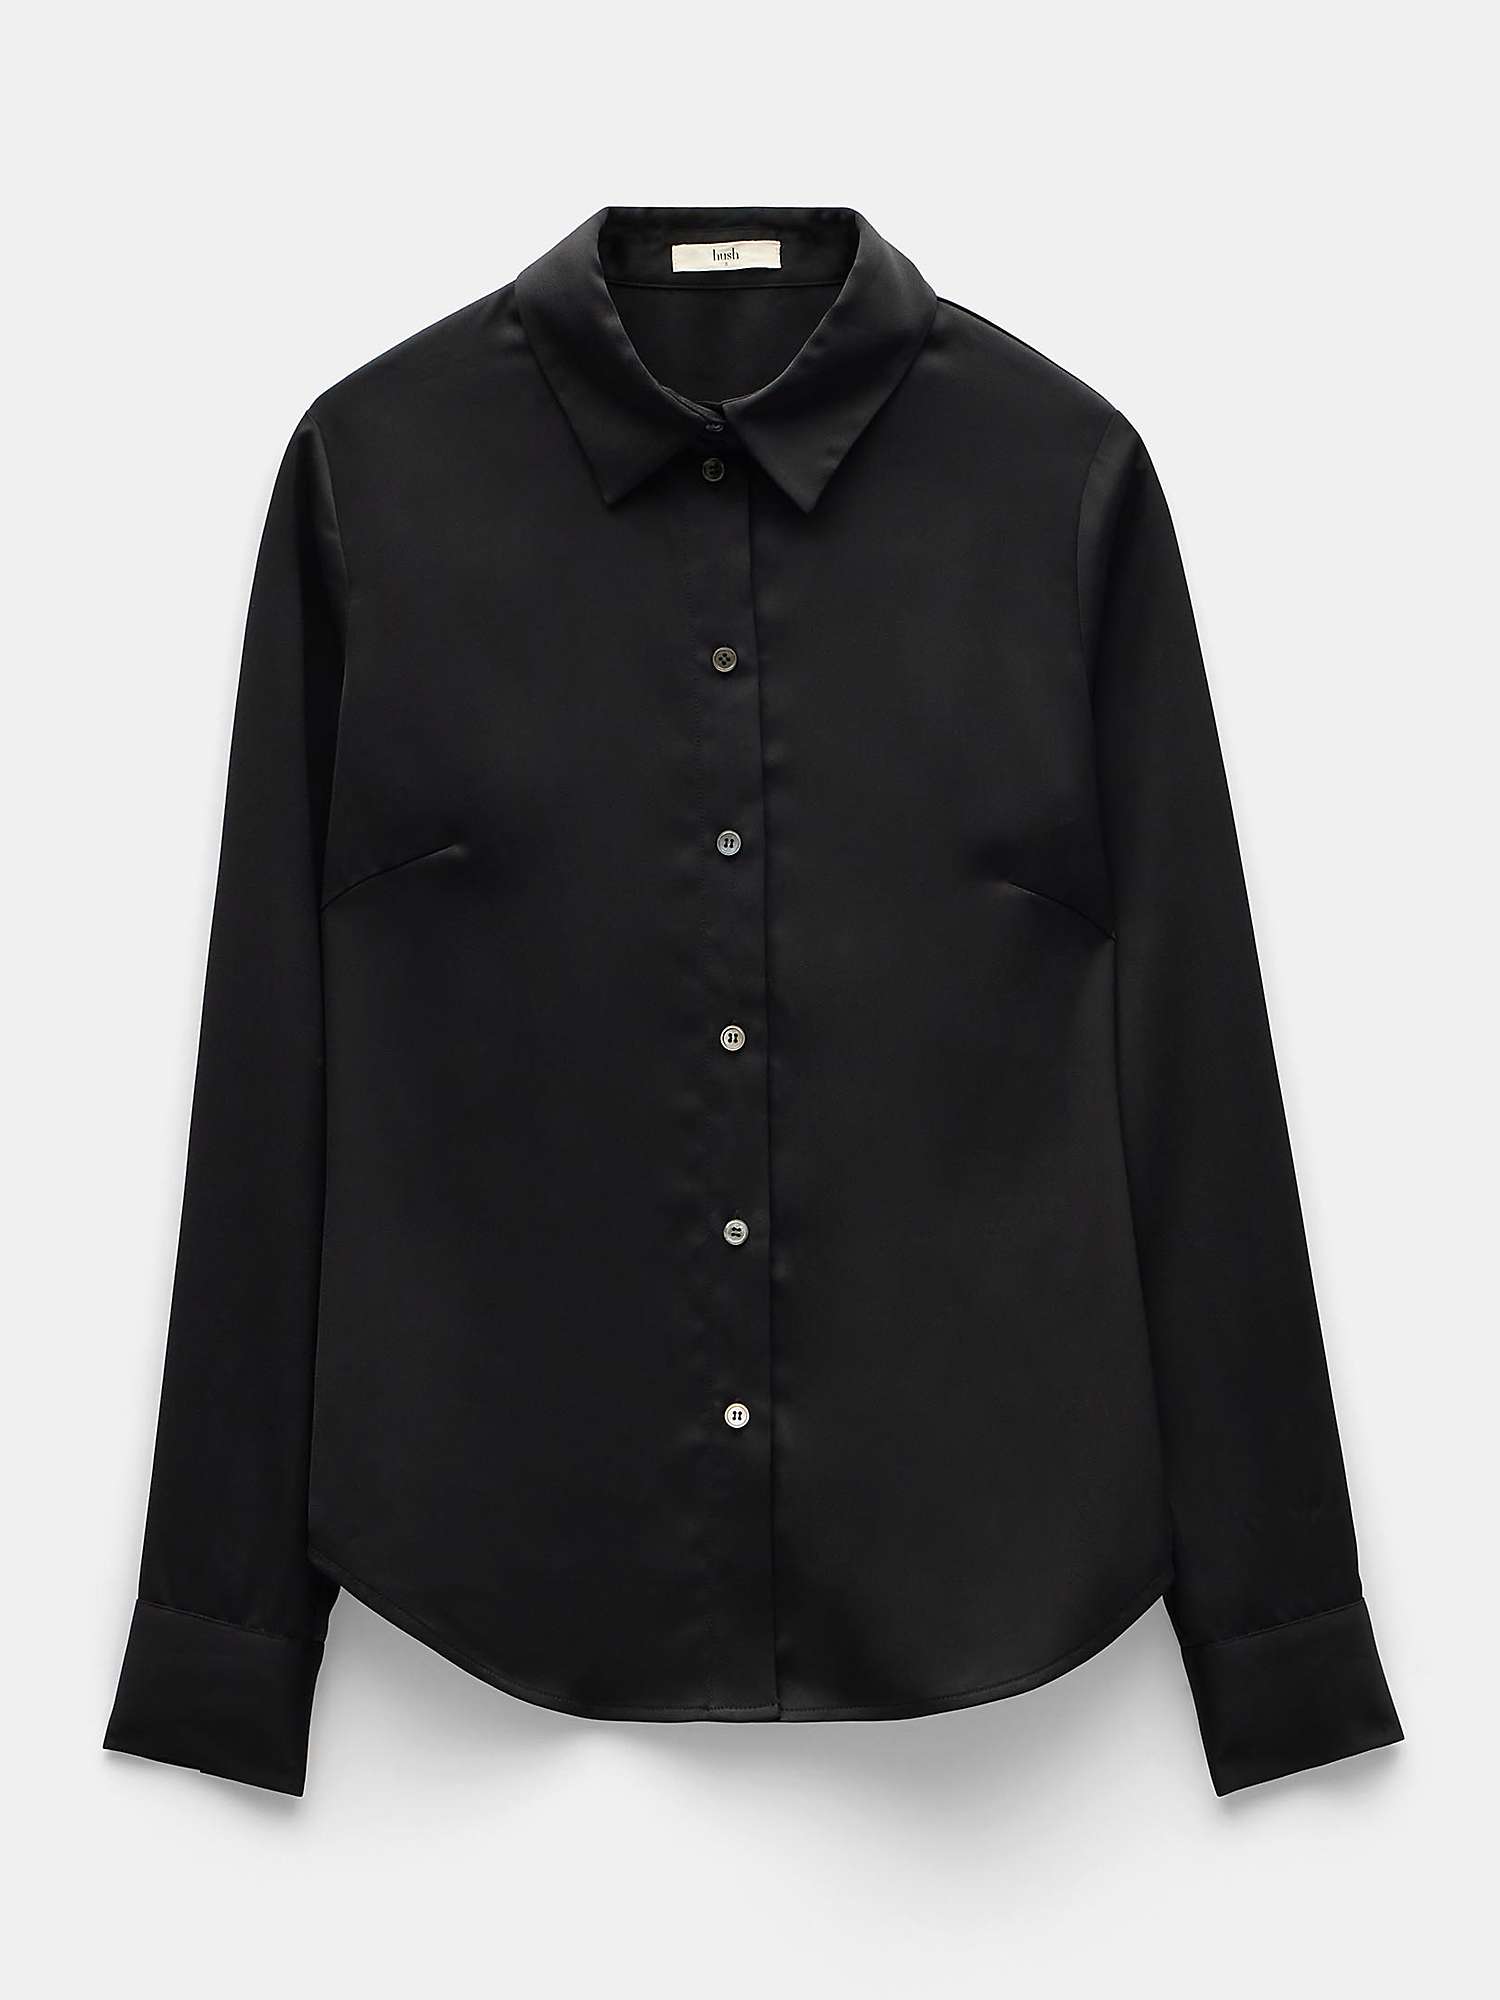 HUSH Jo Slim Crepe Shirt, Black at John Lewis & Partners